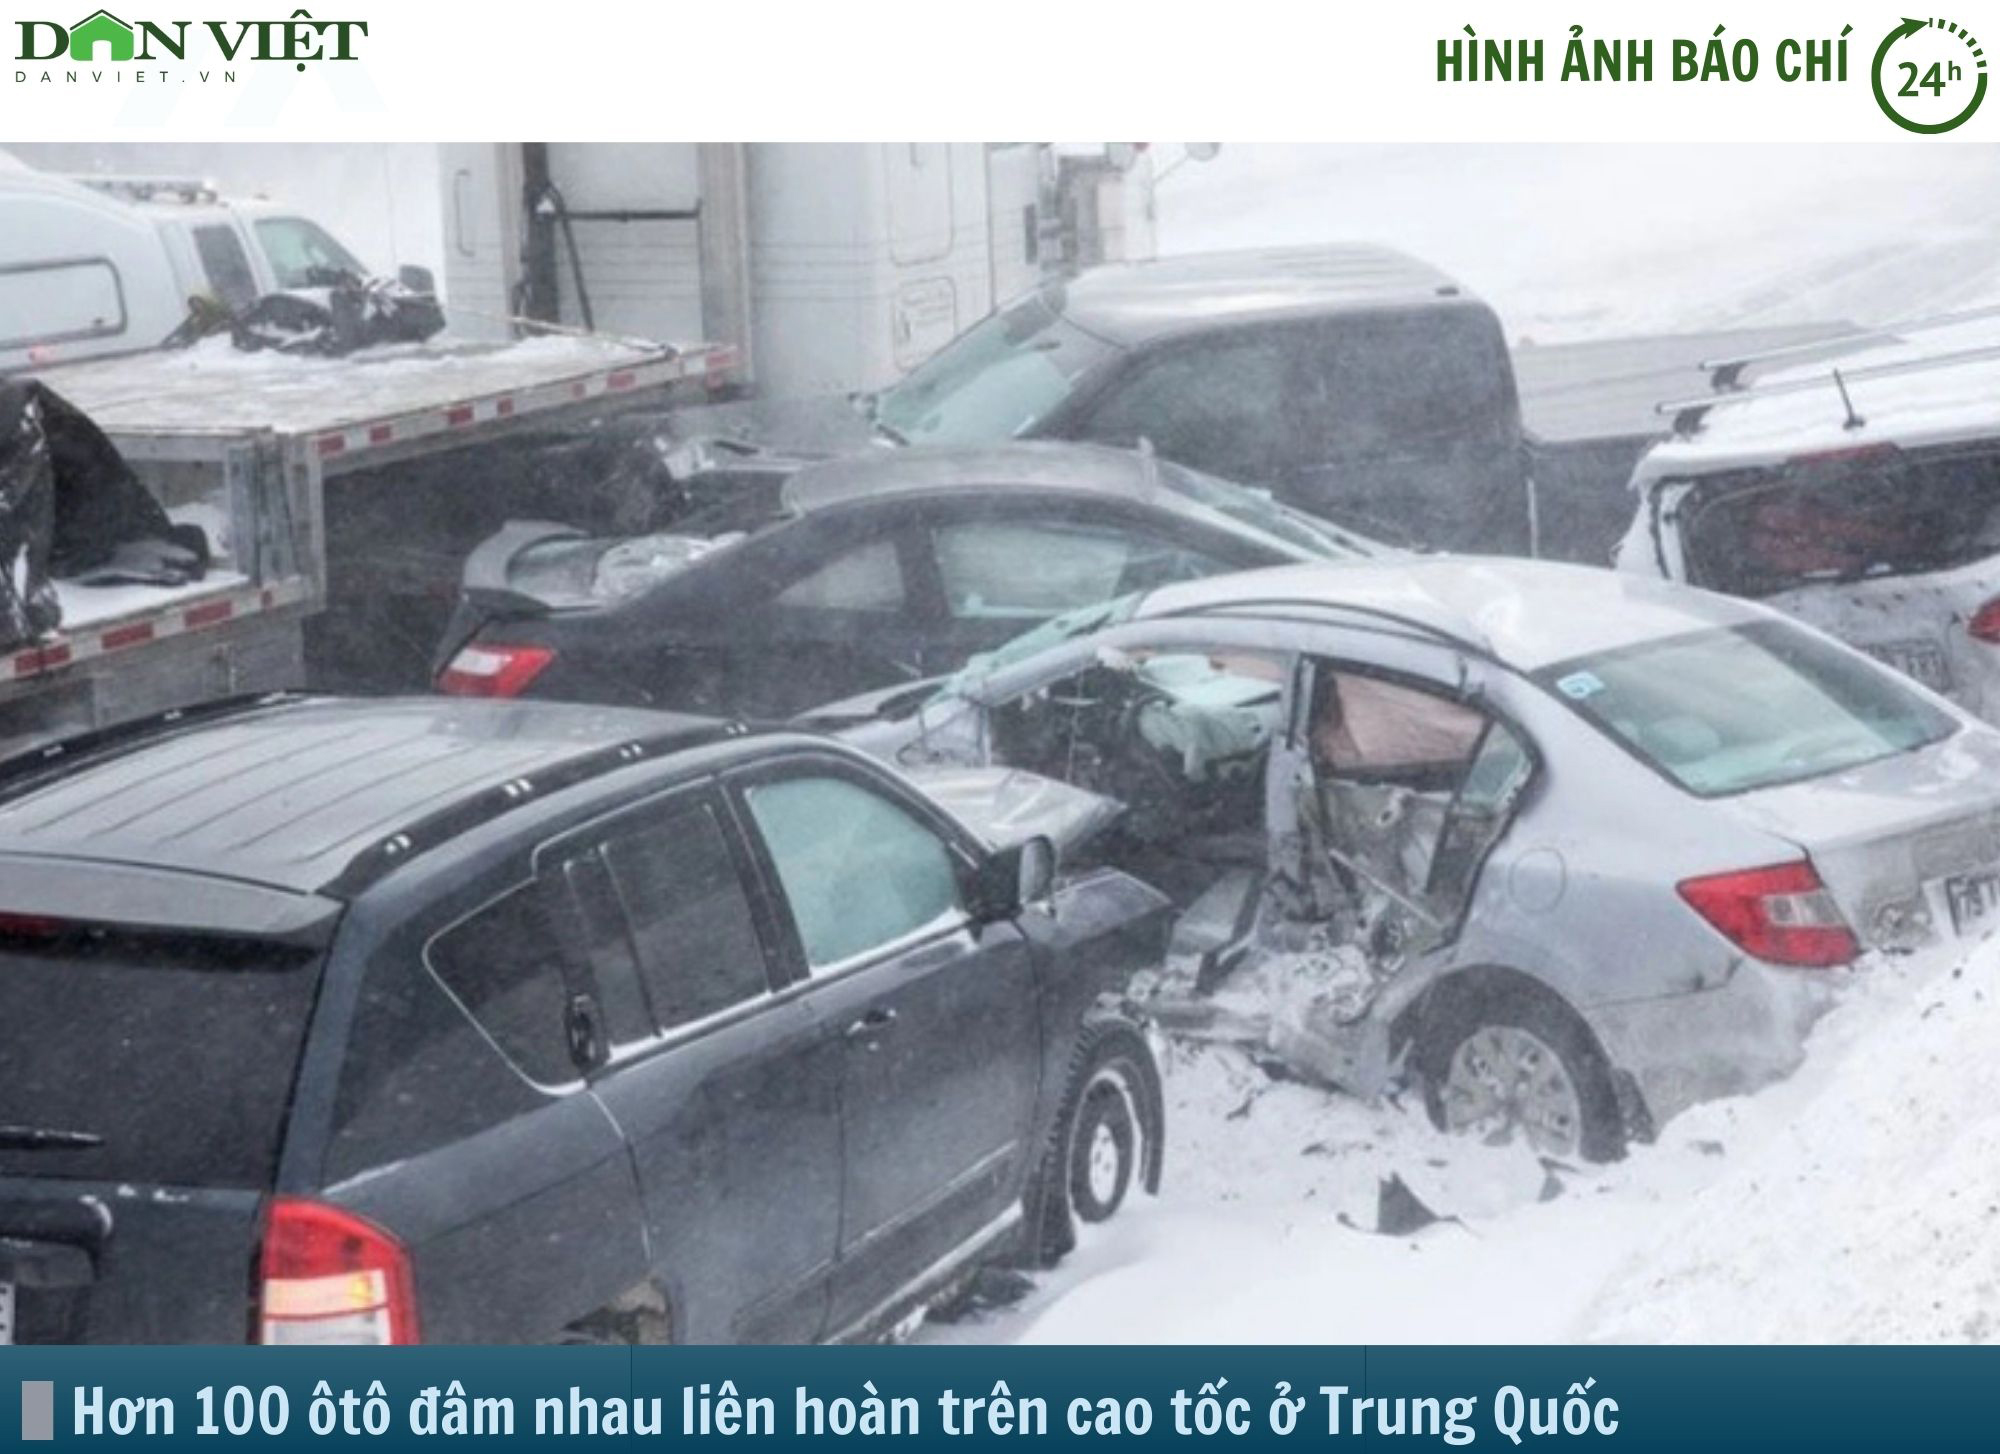 Hình ảnh báo chí 24h: 100 ôtô đâm nhau liên hoàn trên cao tốc ở Trung Quốc- Ảnh 1.